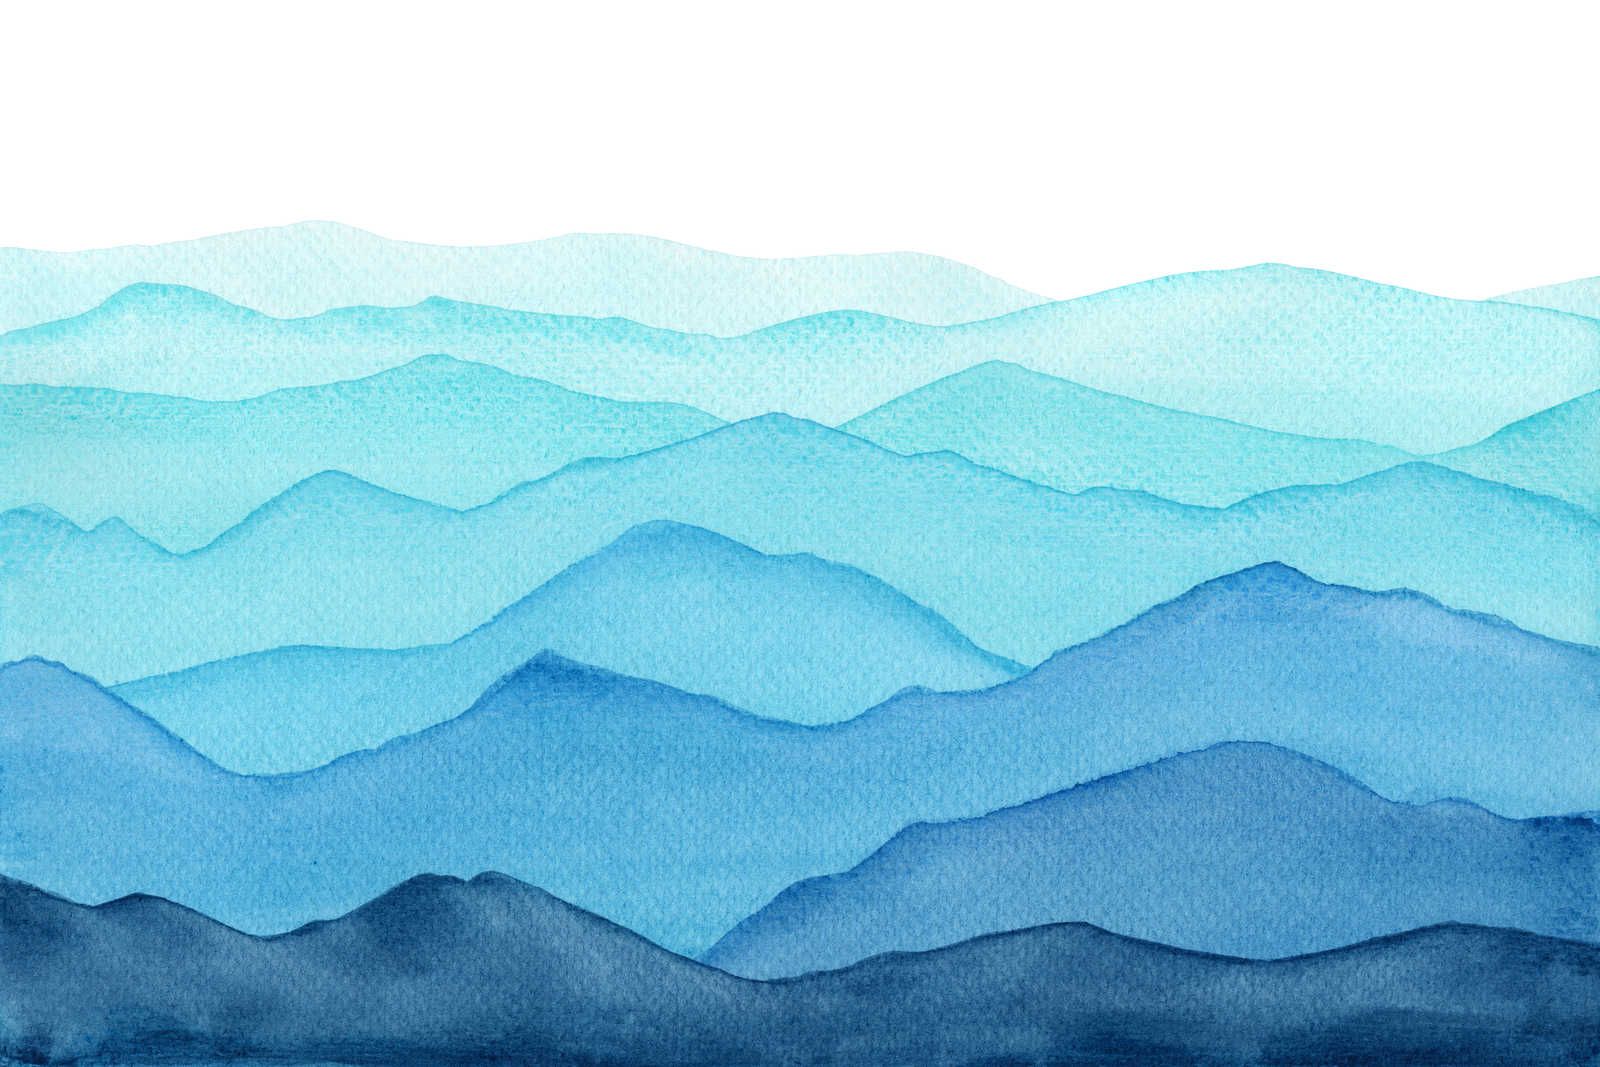             Leinwand Meer mit Wellen in aquarell – 90 cm x 60 cm
        